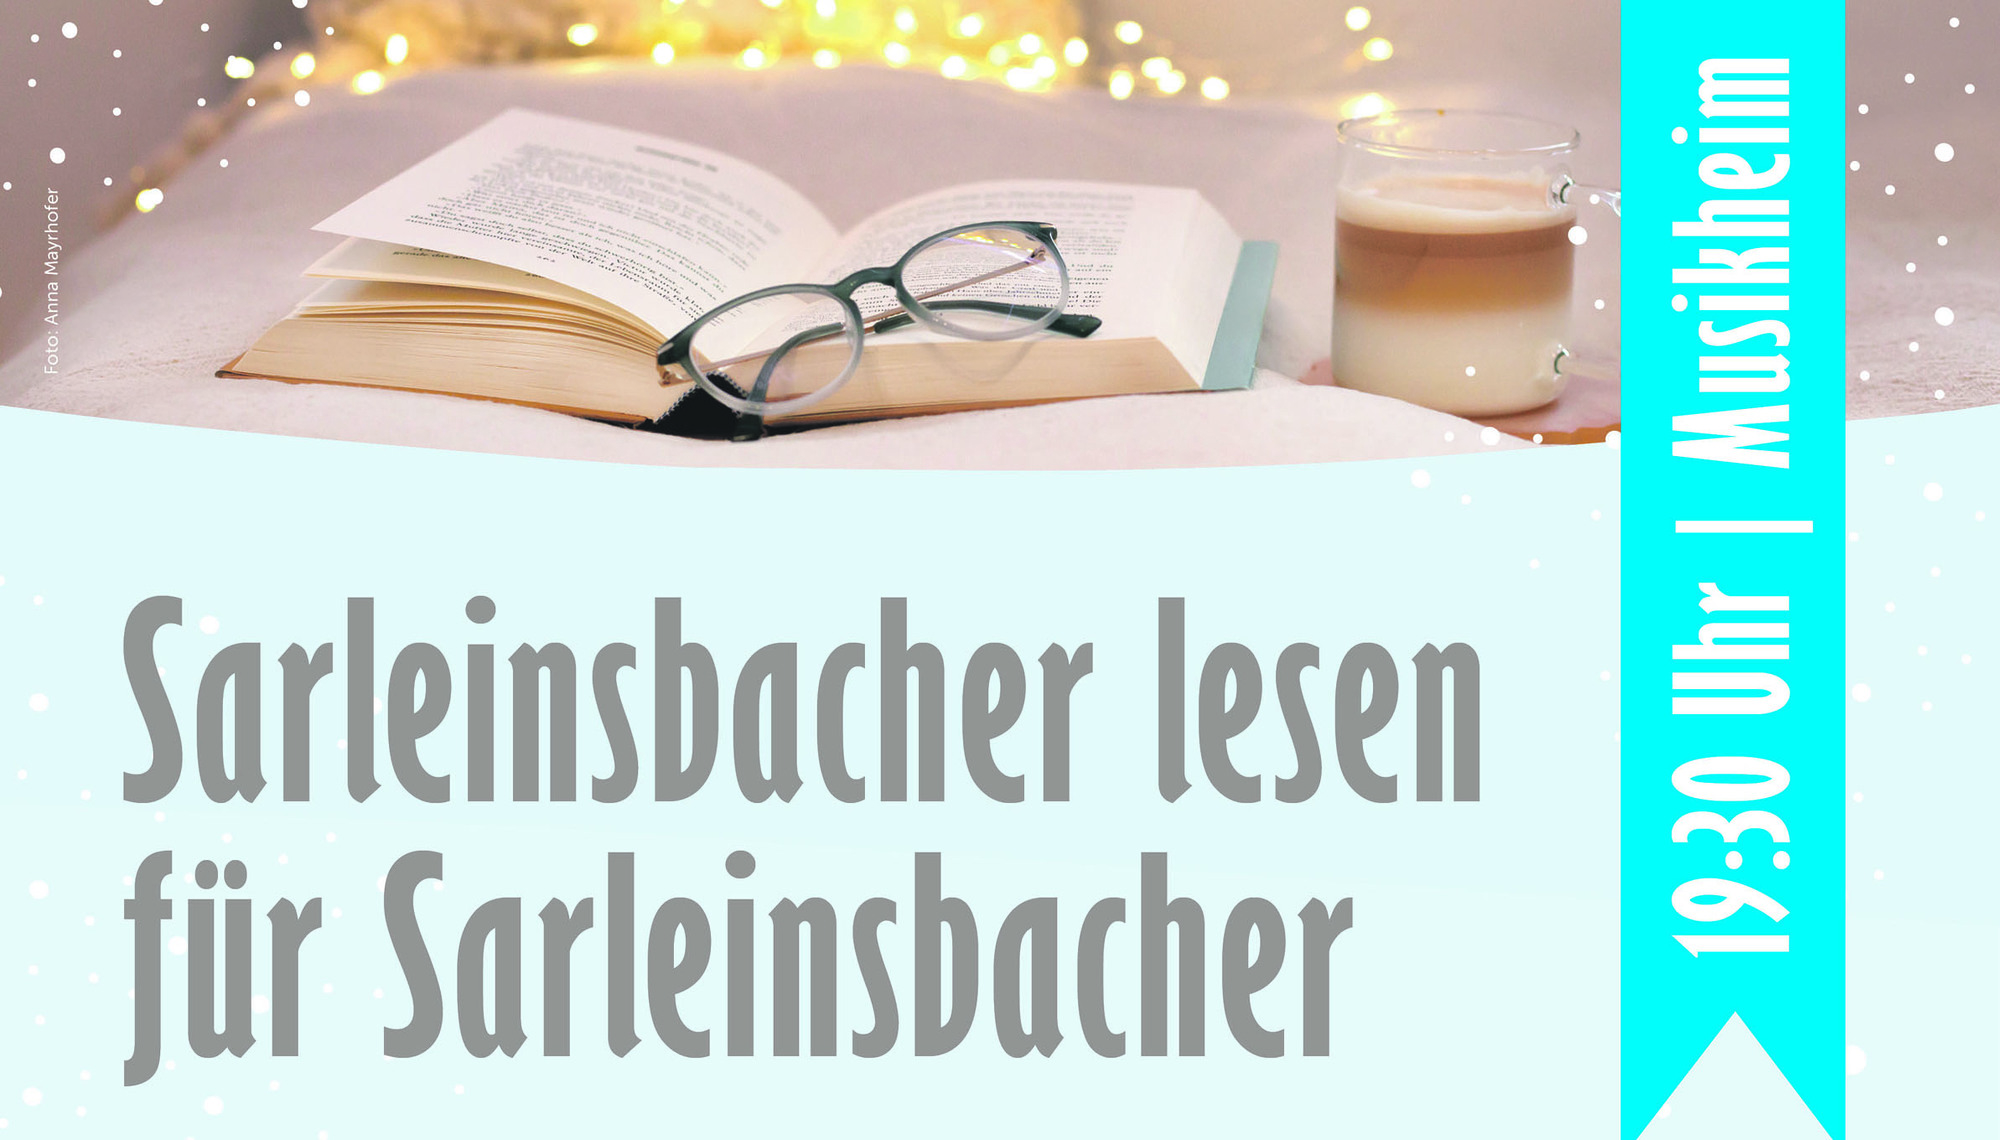 Sarleinsbacher lesen für Sarleinsbacher